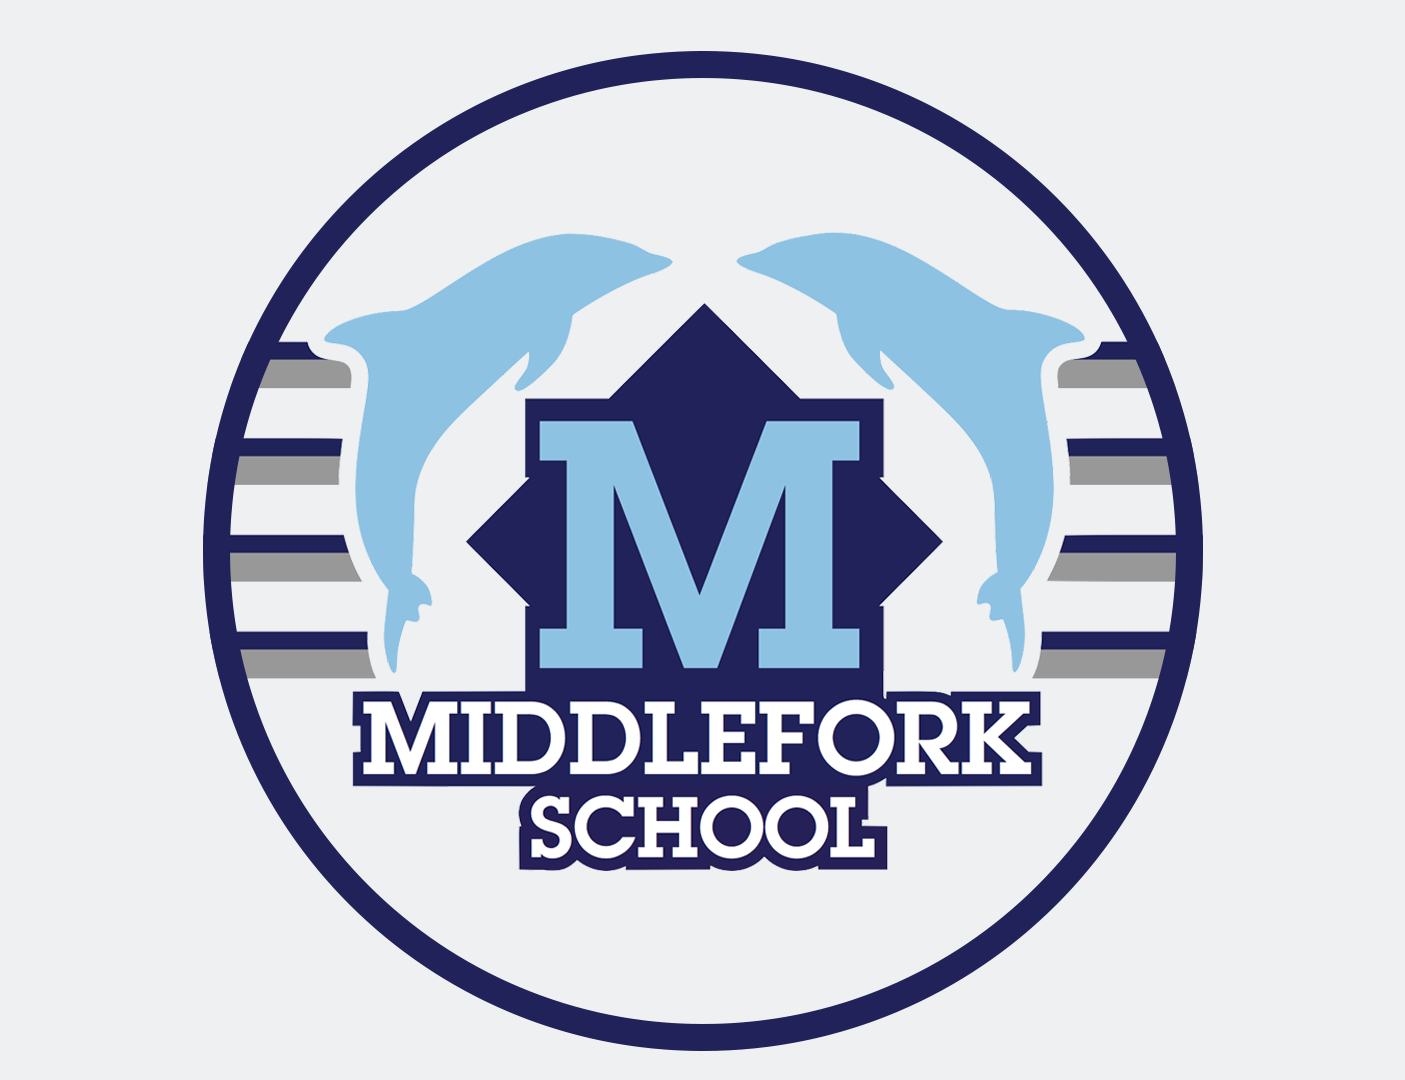 MIDDLEFORK SCHOOL MAGNET - humanKIND